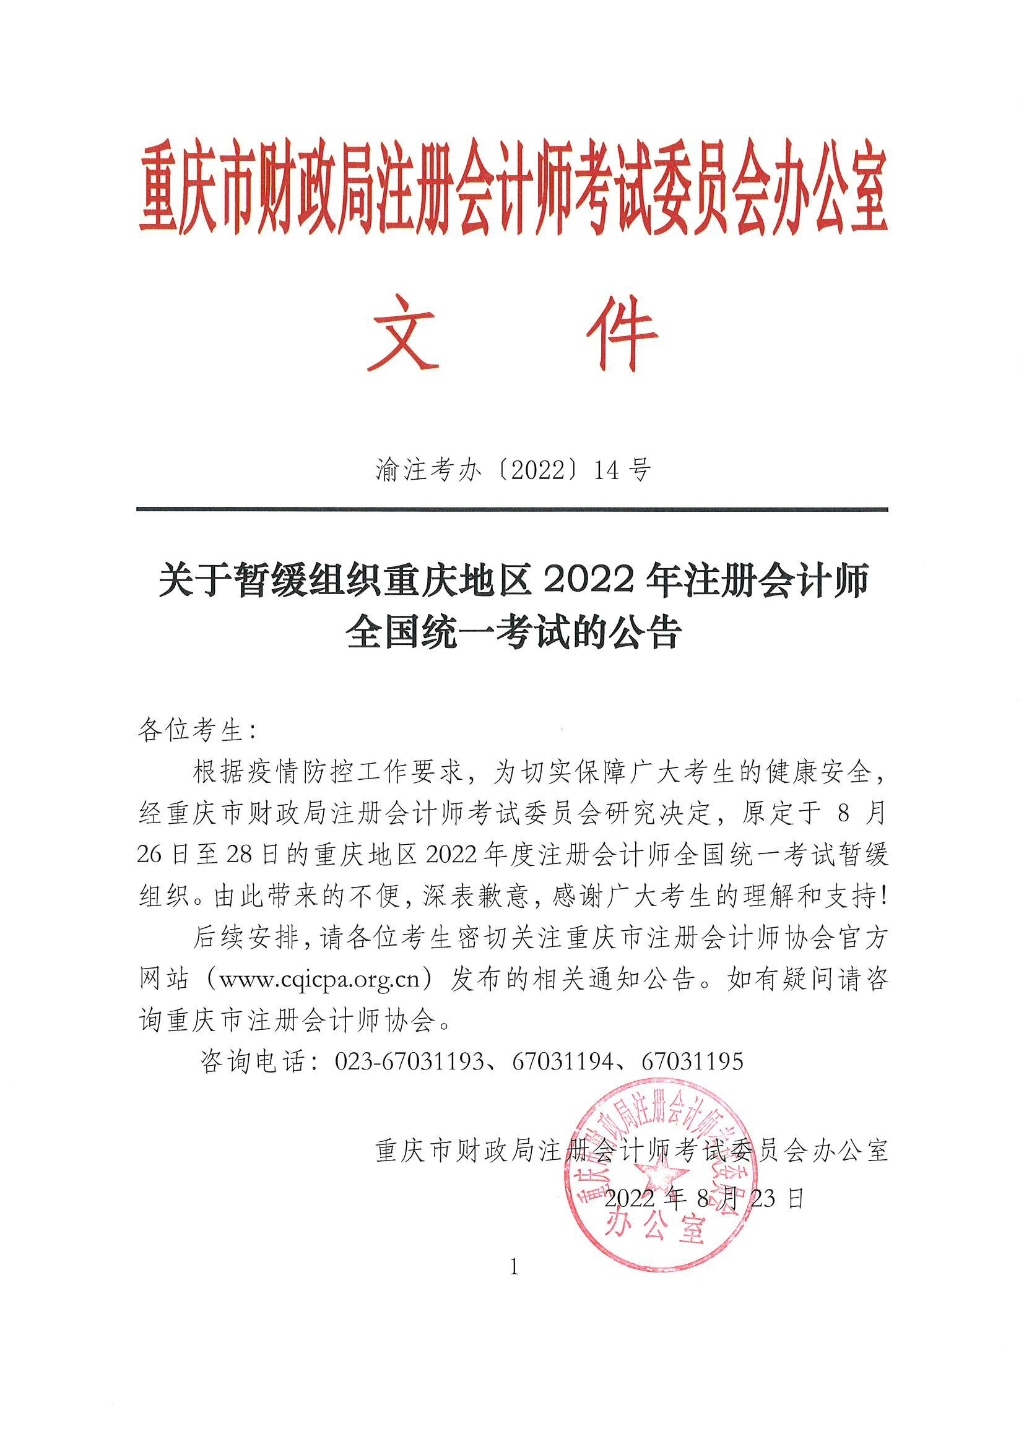 重庆注协:2022年注会考试暂缓组织